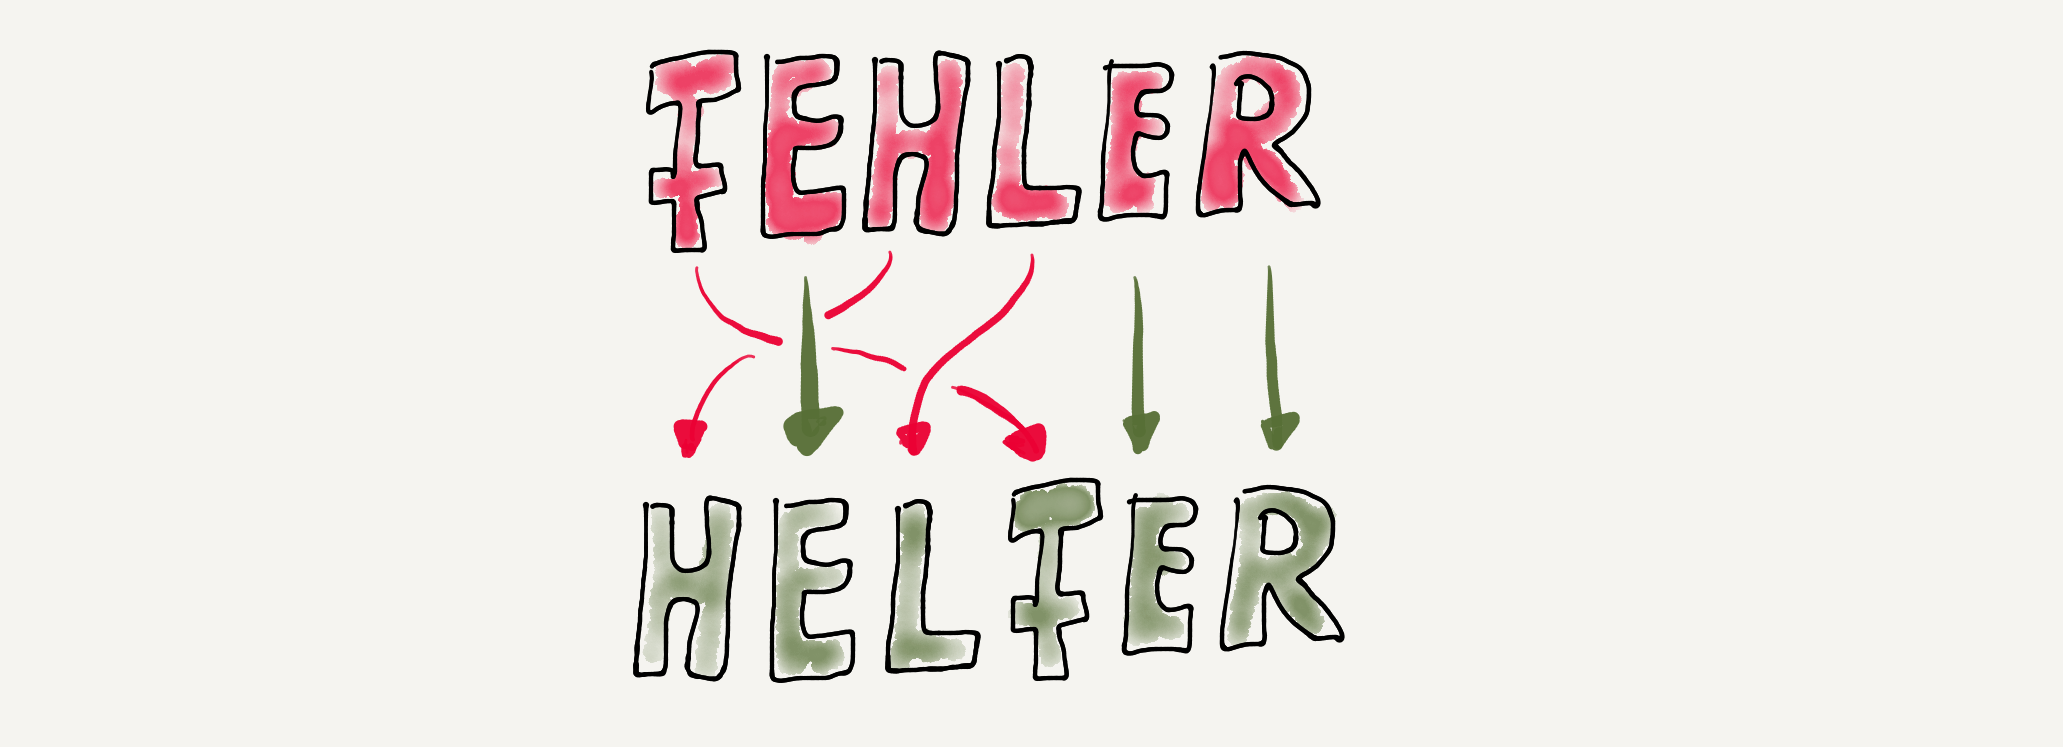 fehler-helfer-6180ee2f6d10f558192842.png